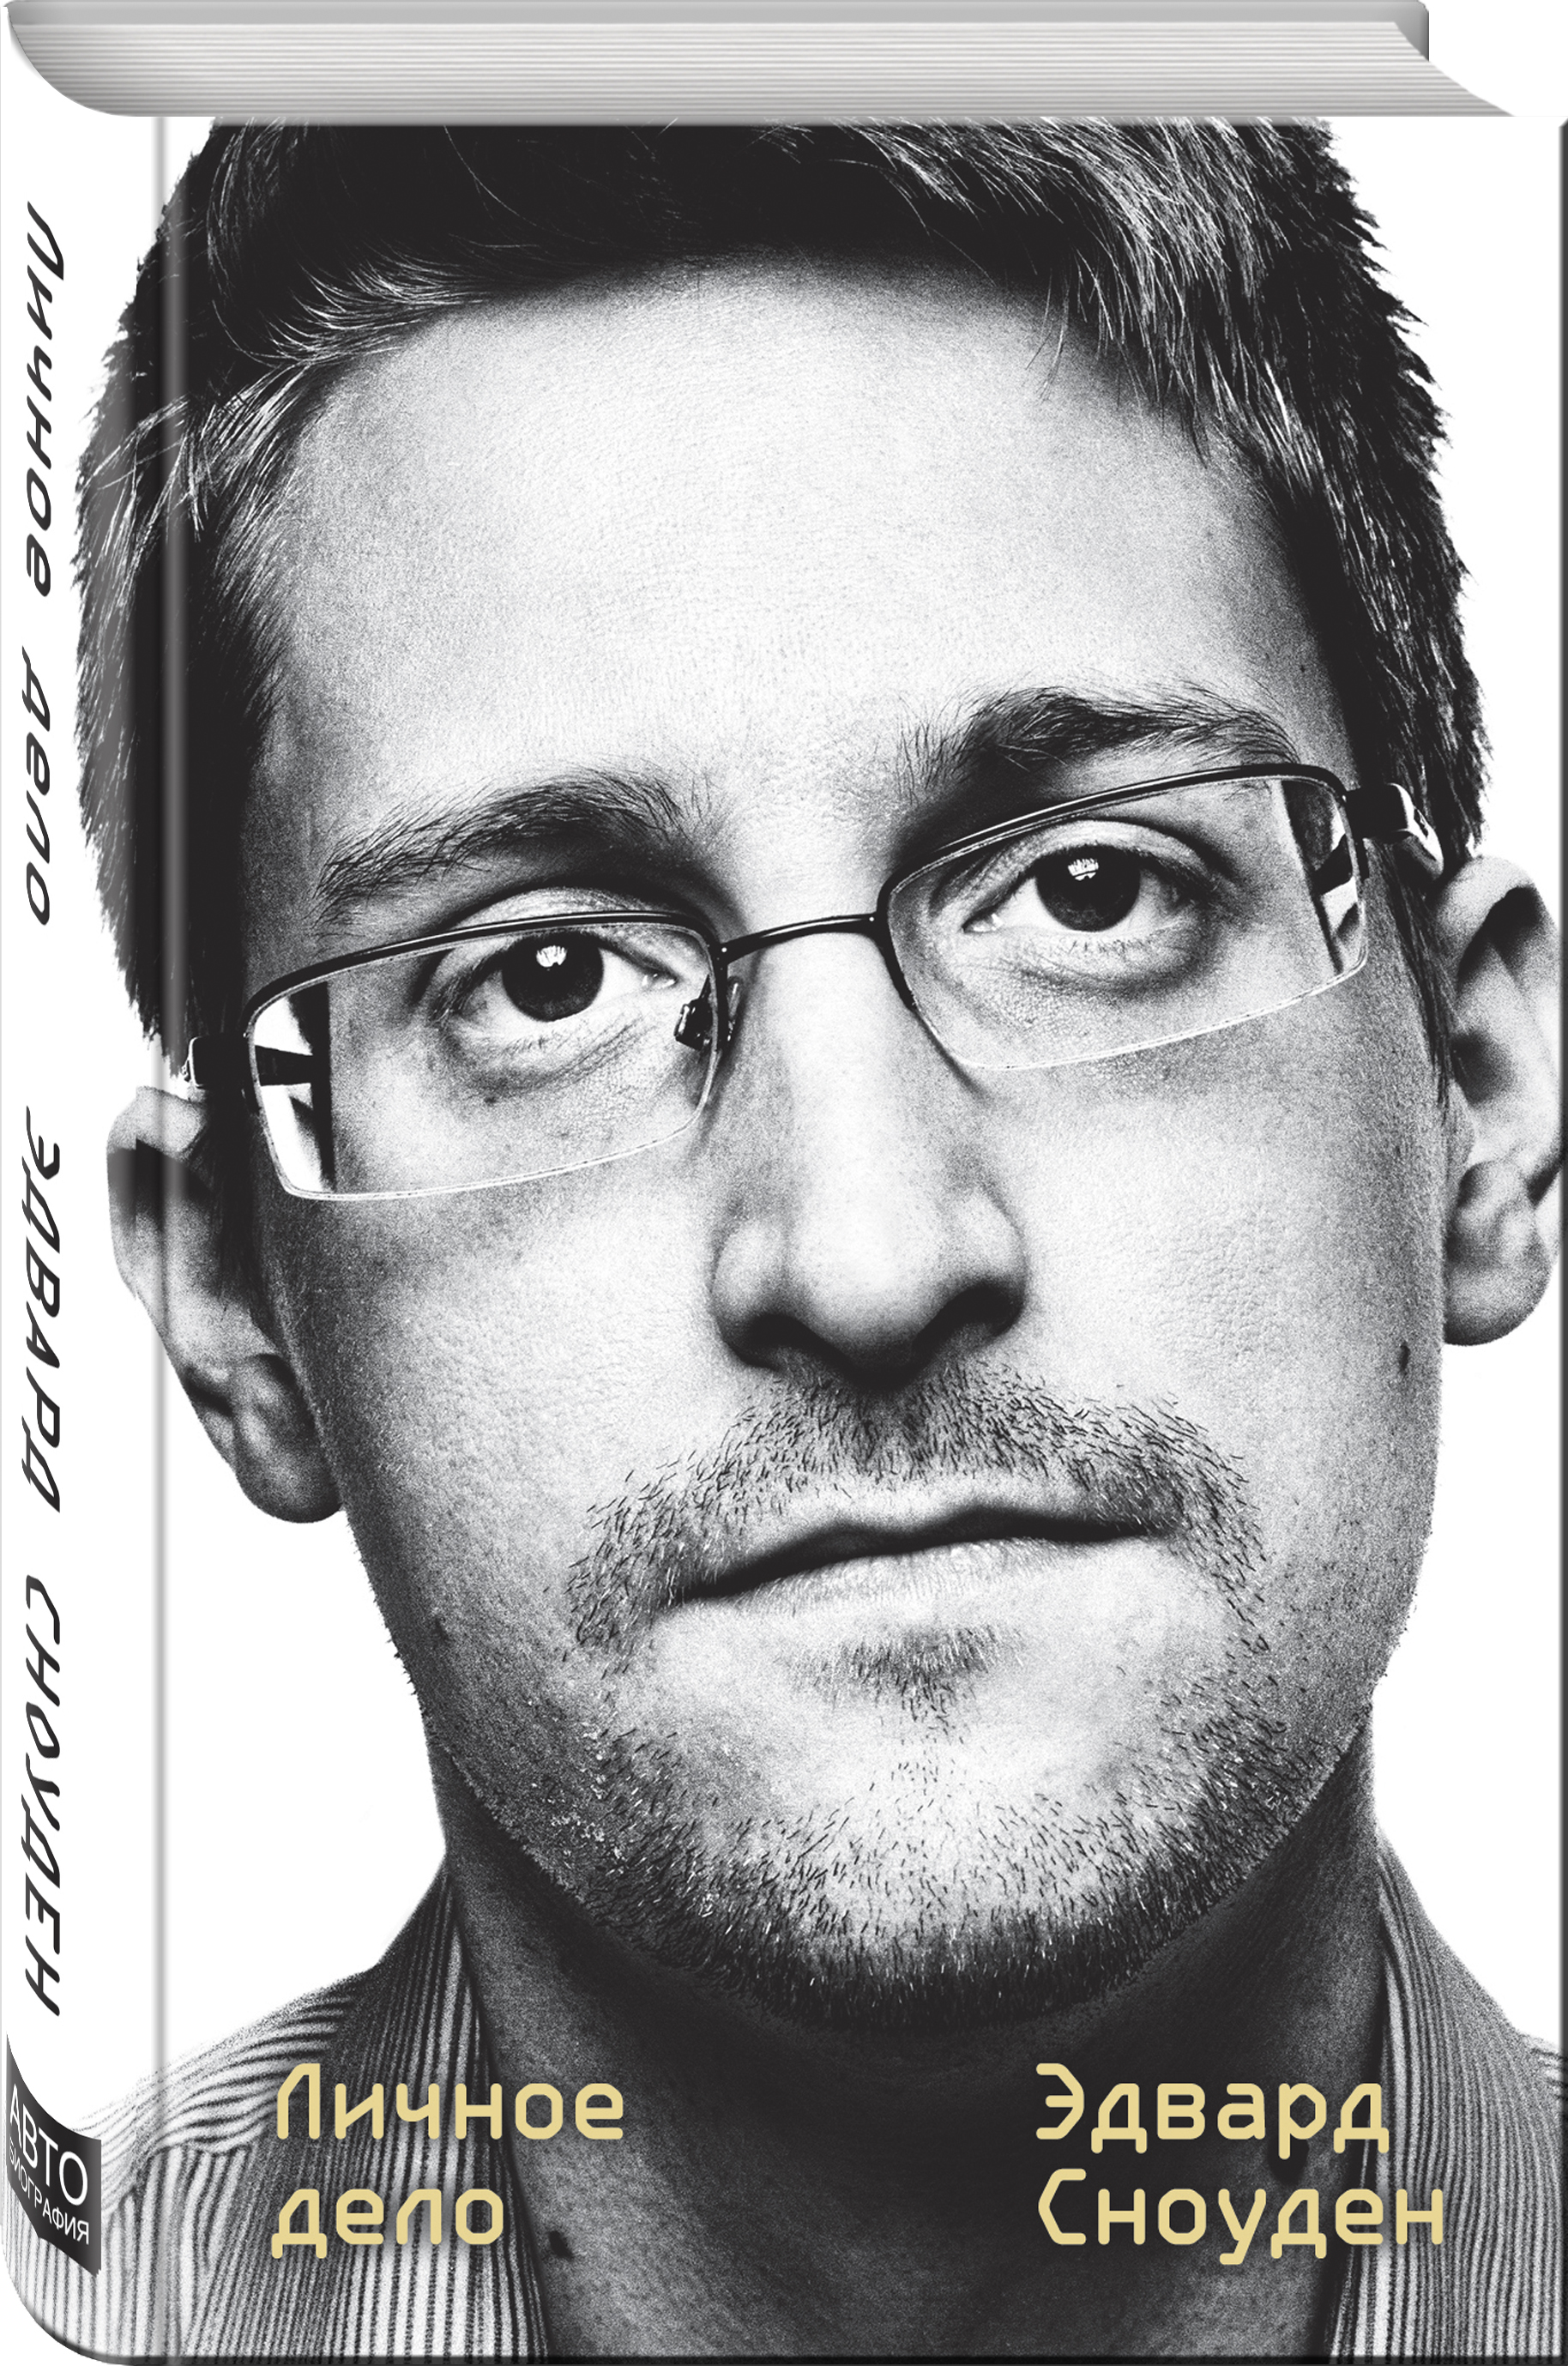 Книга "Эдвард Сноуден. Личное дело" Сноуден Эдвард - купить книгу ISBN 978-5-04-107888-1 с быстрой доставкой в интернет-магазине OZON